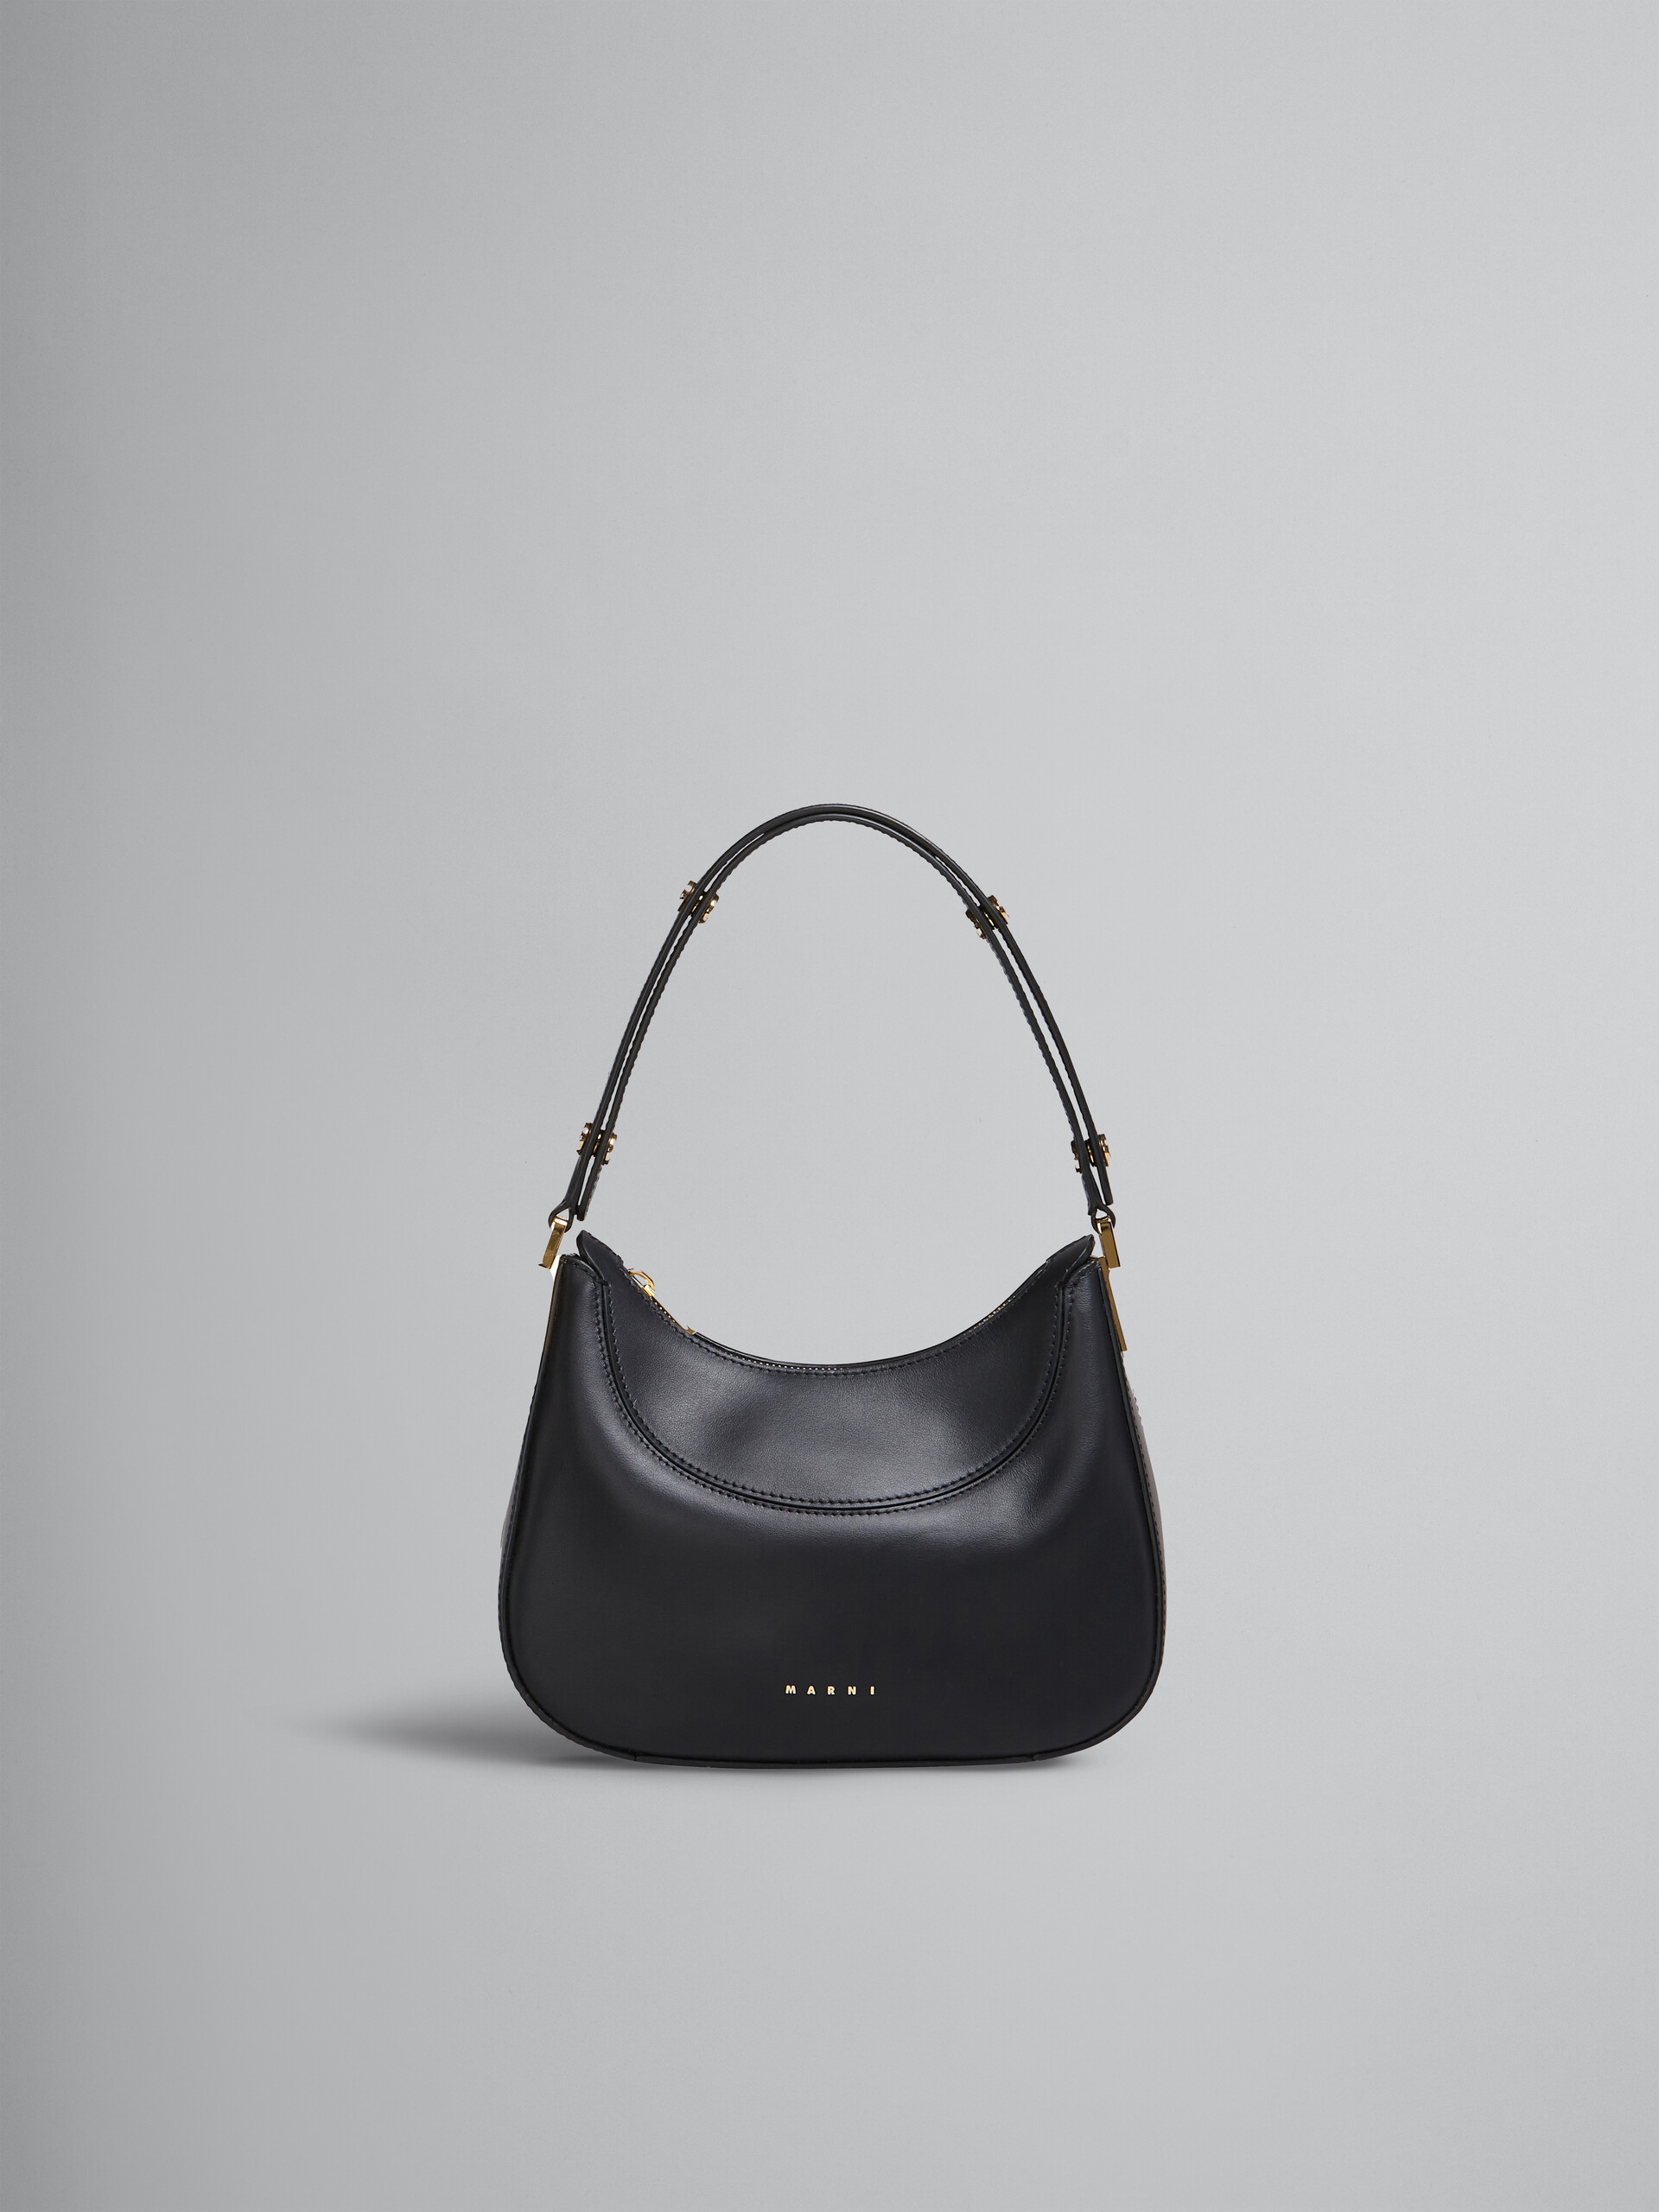 Milano mini bag in black leather - Handbag - Image 1